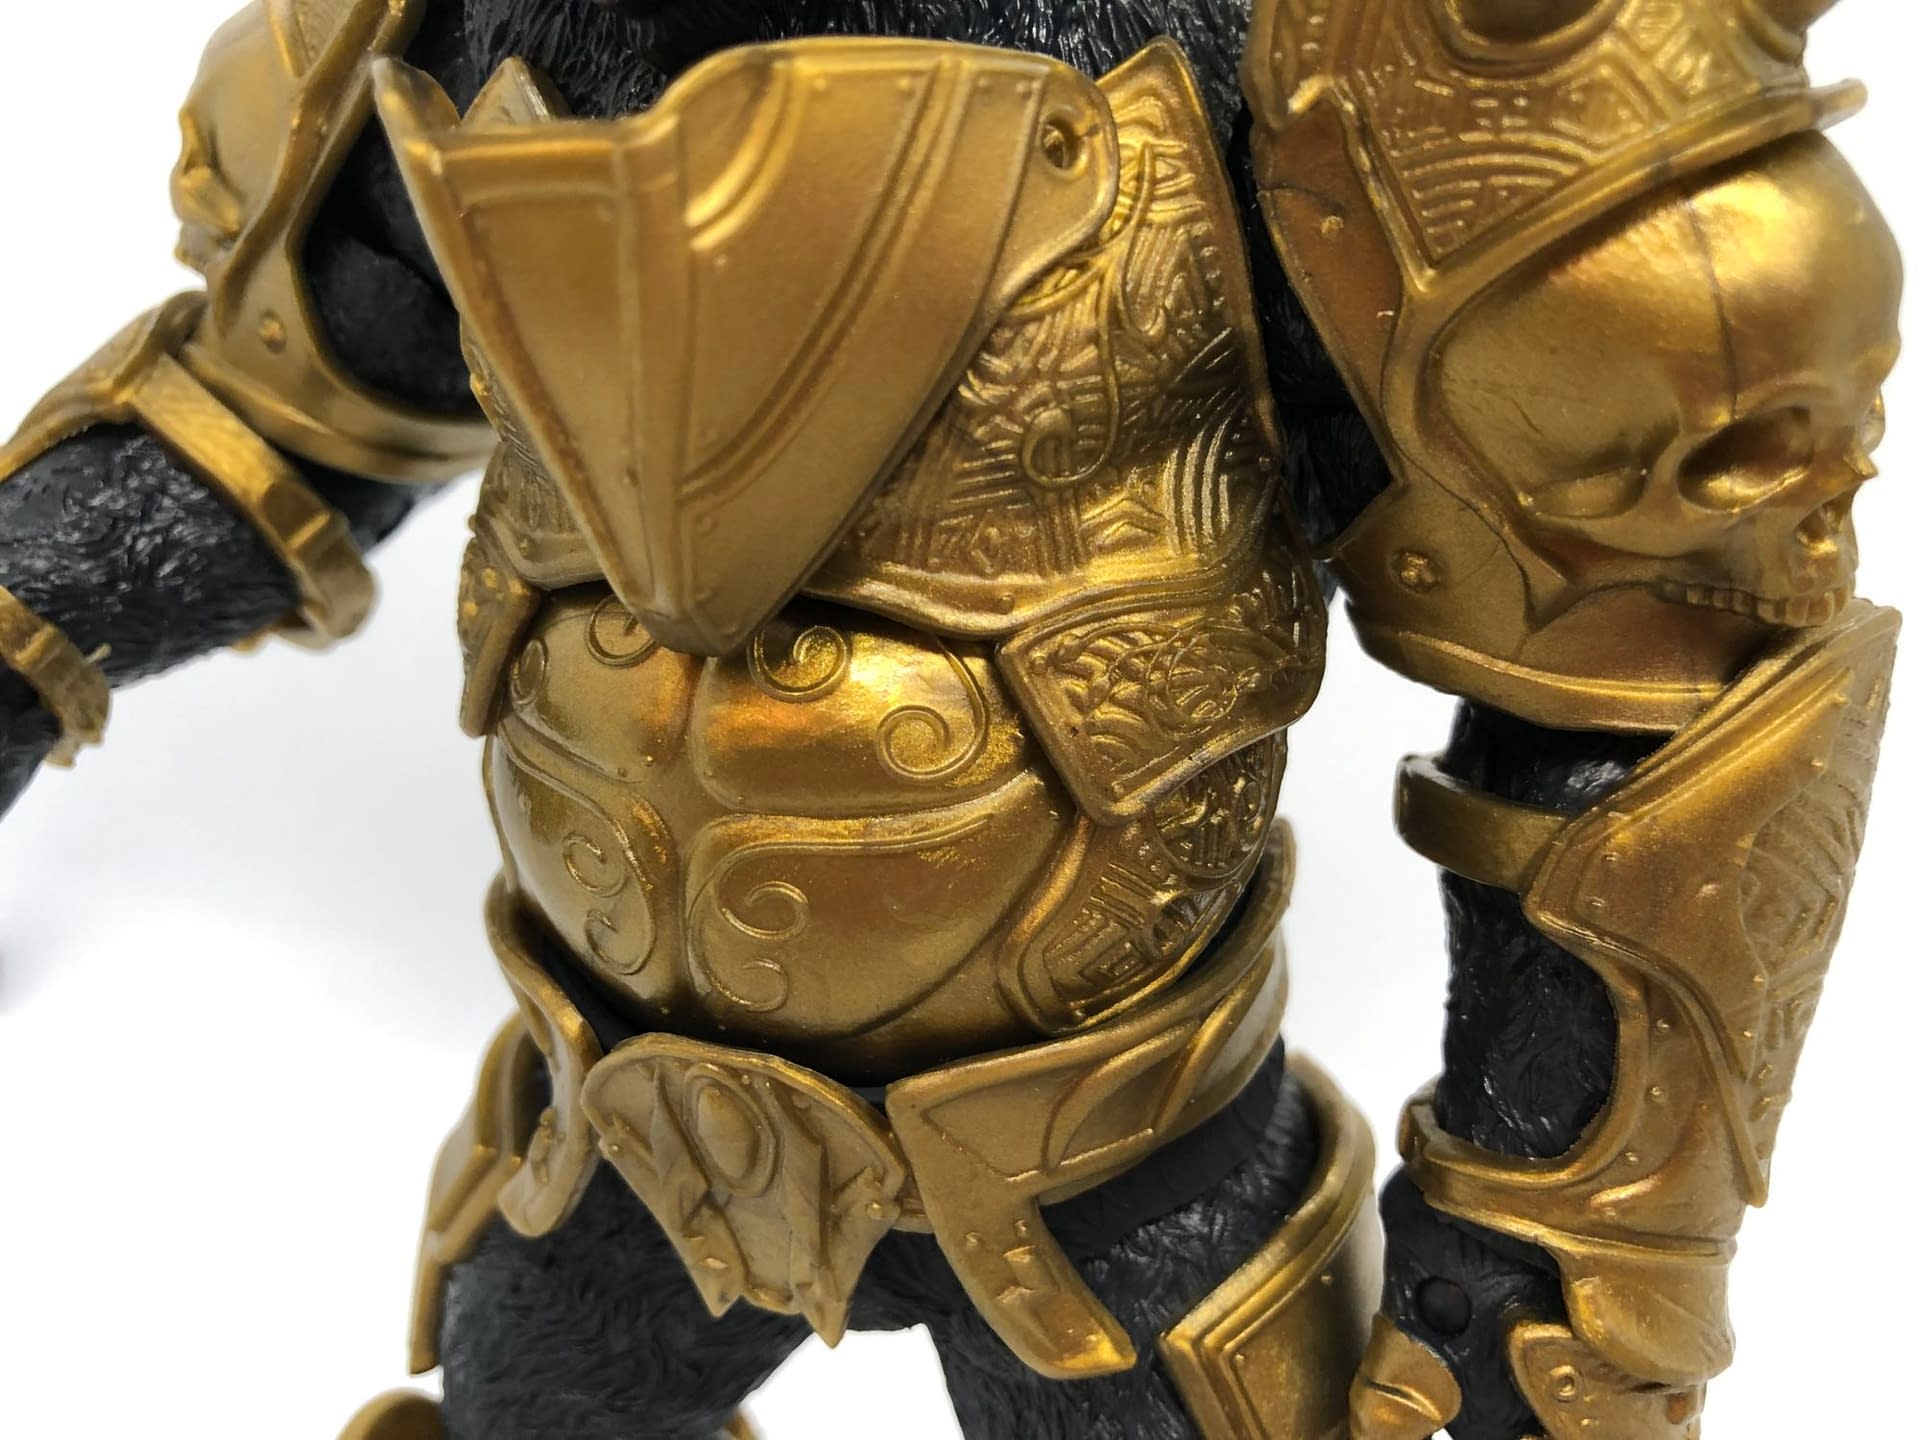 gorilla grodd armor